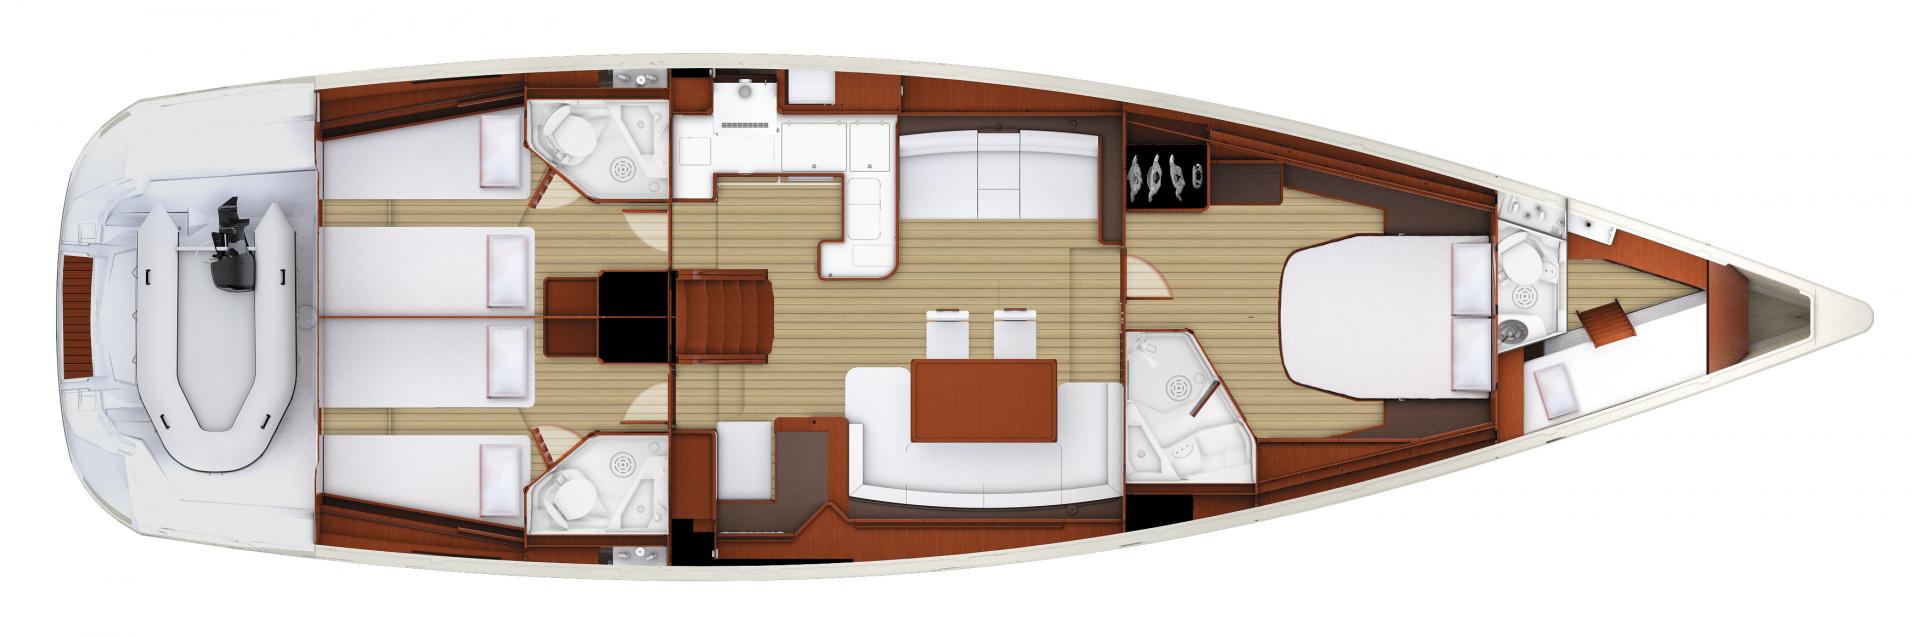 Jeanneau 58 | 3 cabins, 3 heads, Skipper cabin